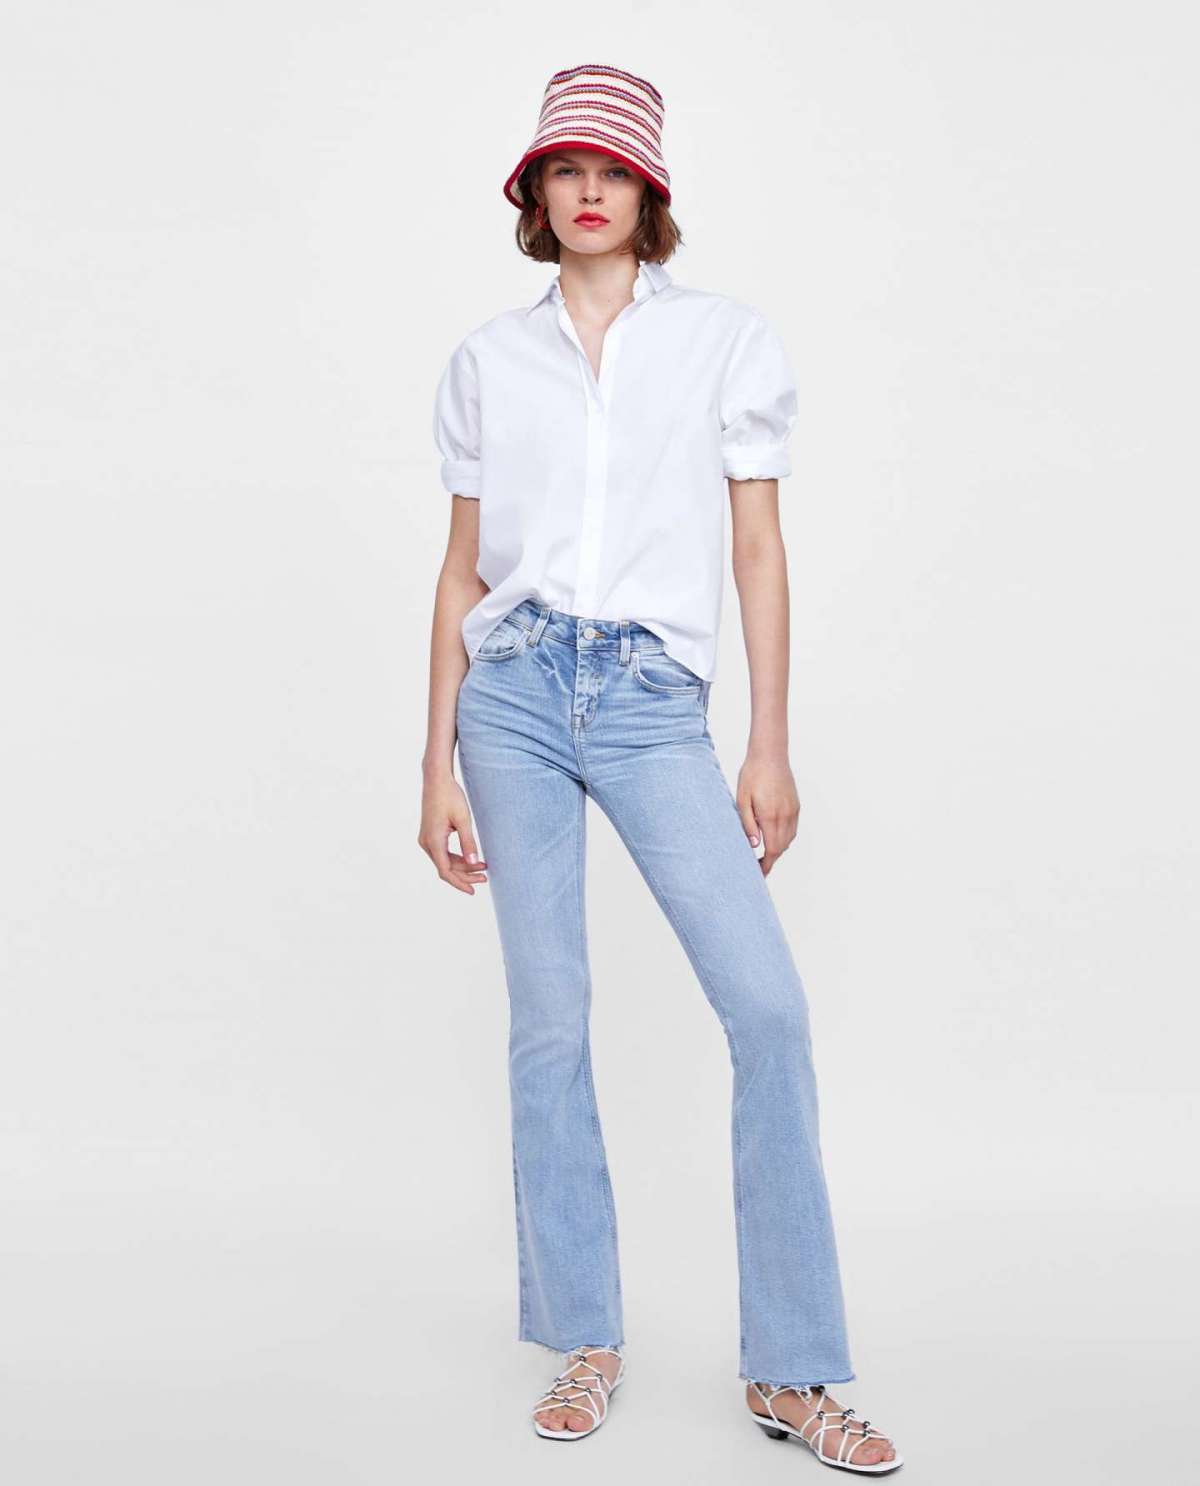 Jeans chiari e camicia Zara